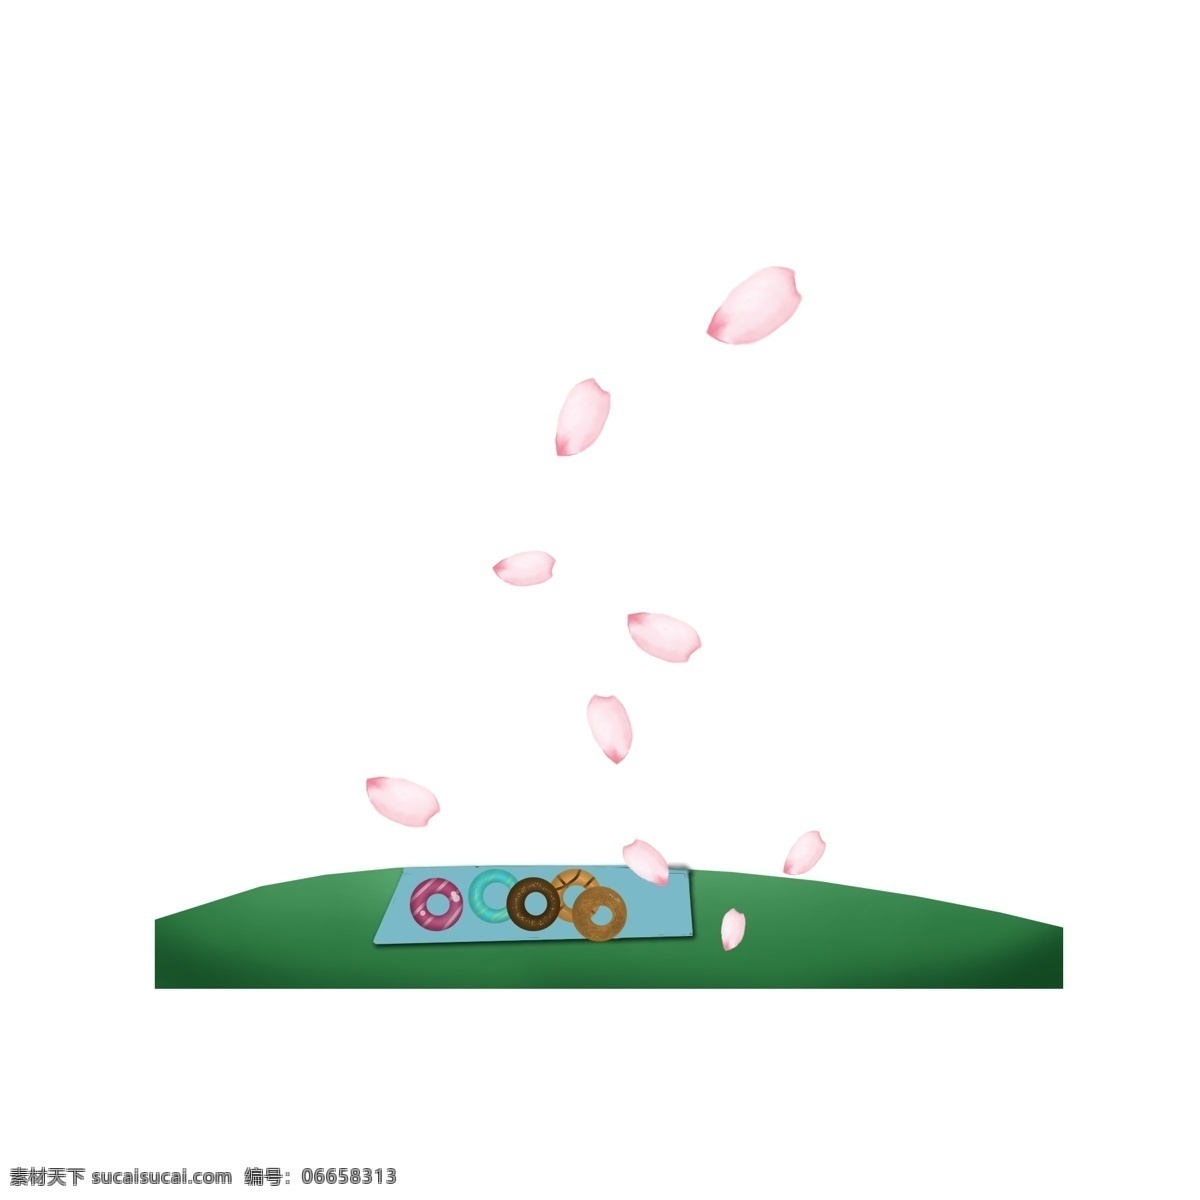 草地 通用 词 野餐垫 甜甜 圈 通用词 野餐 粉色花瓣 甜甜圈 装饰图案 卡通手绘 免扣图png